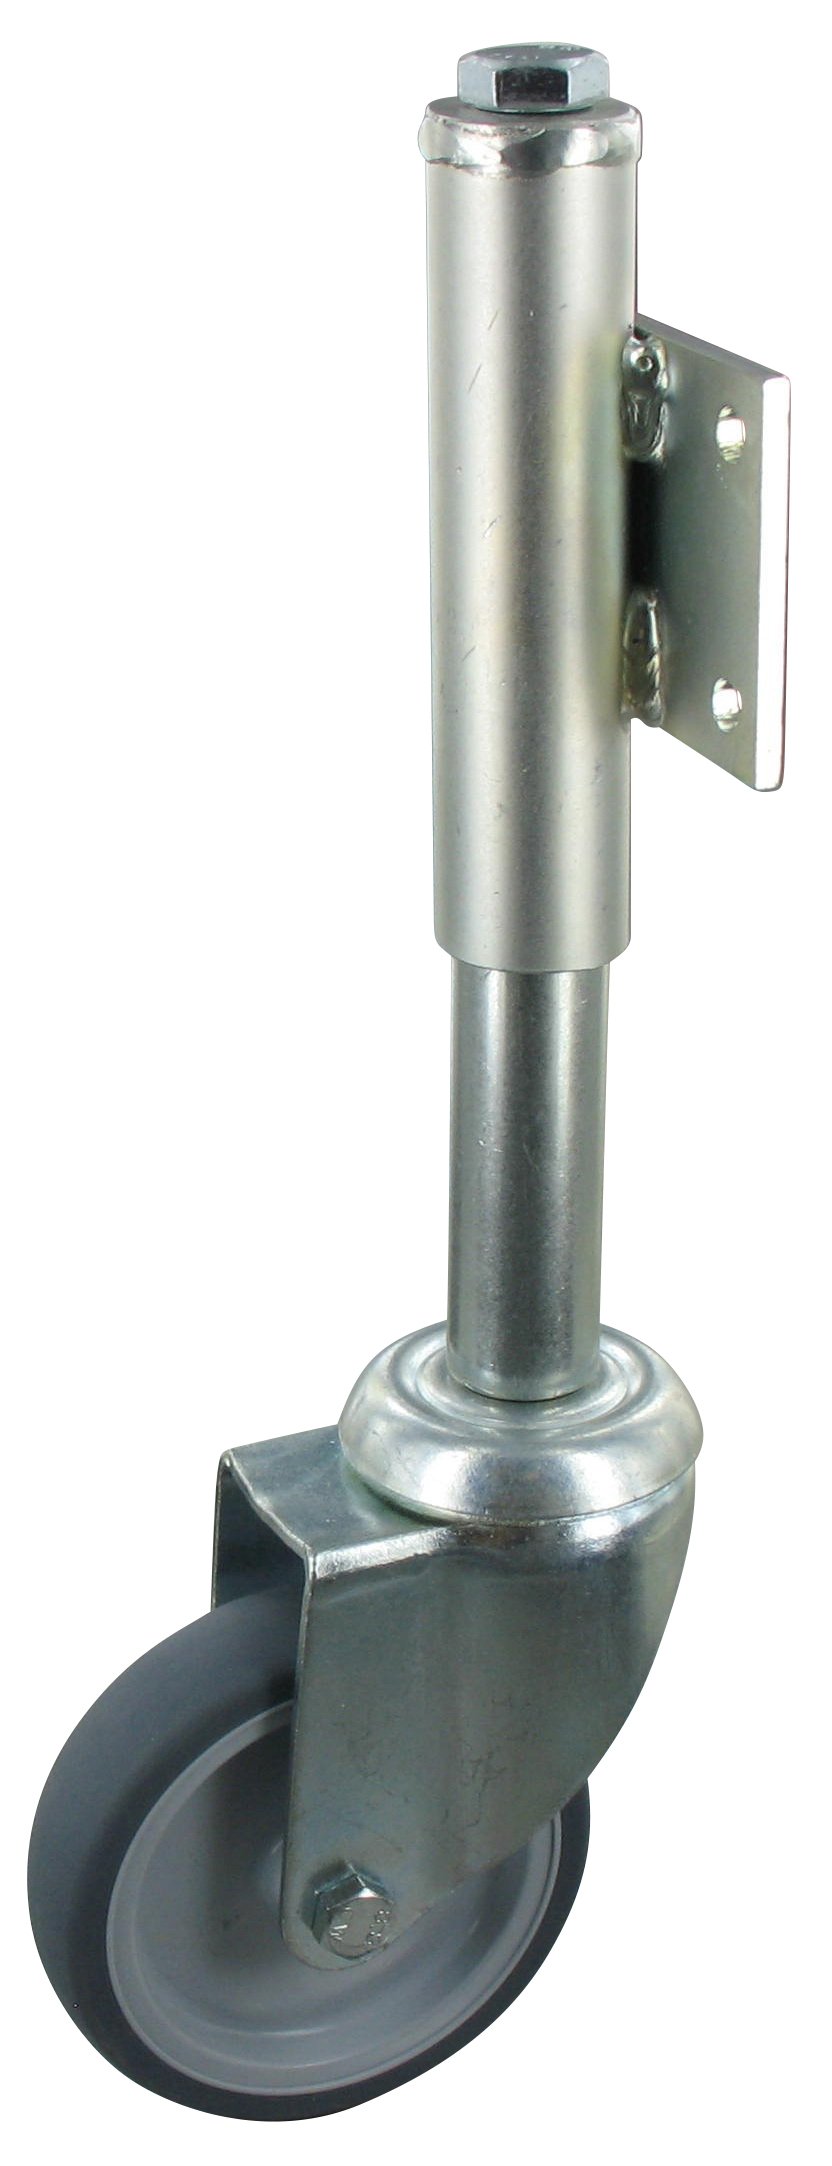 Torrolle GEP NLAF Serie, Ø100x32mm, Stahl, gepresst, grau, 100 KG Tragfähigkeit, 006829